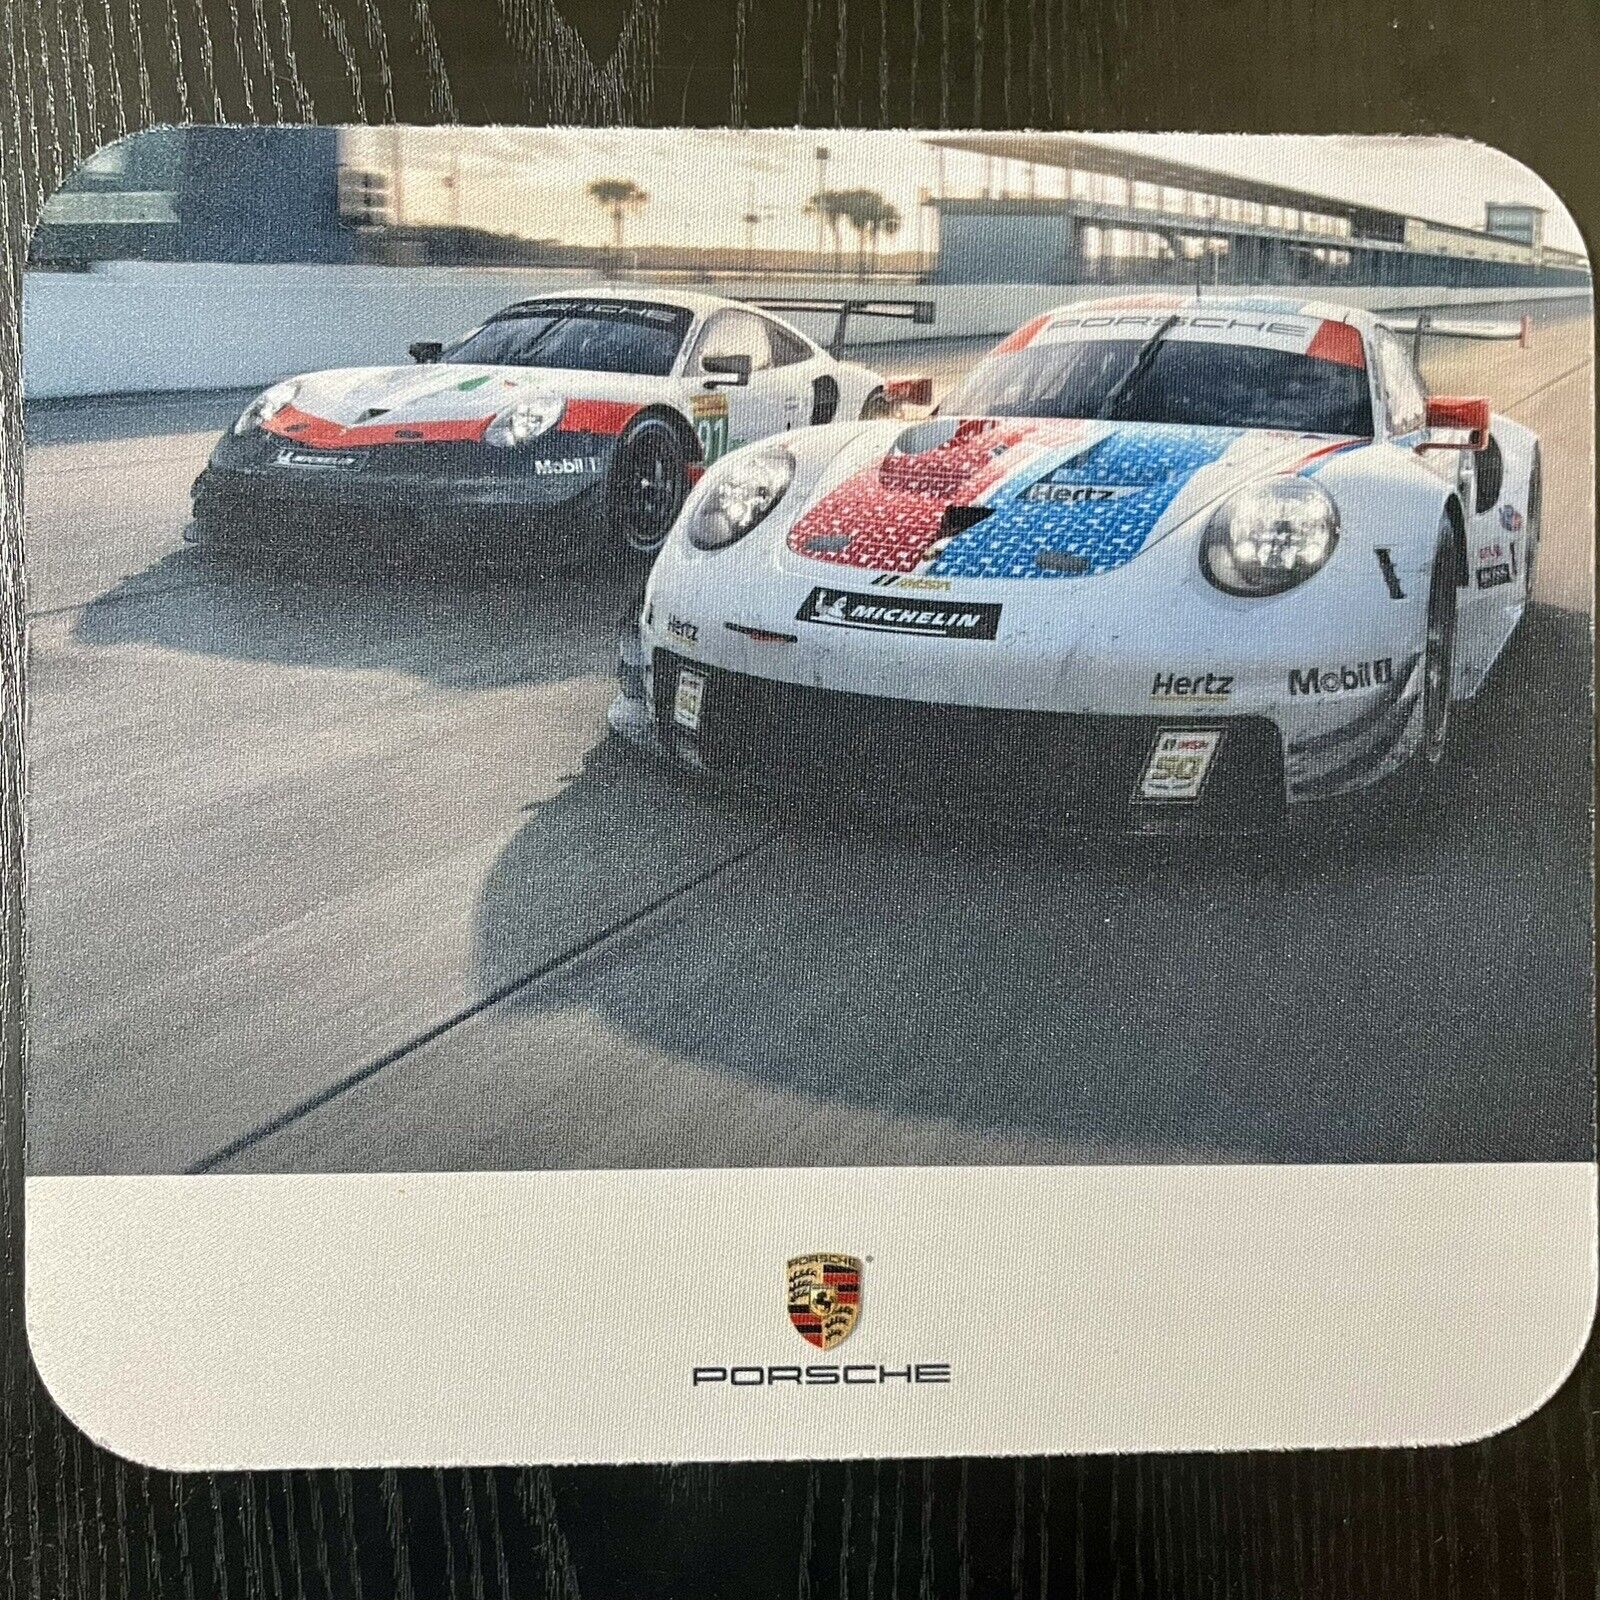 RARE Genuine Porsche Dealer Merchandise Computer Mouse Pad 911 RSR Race Car Gift